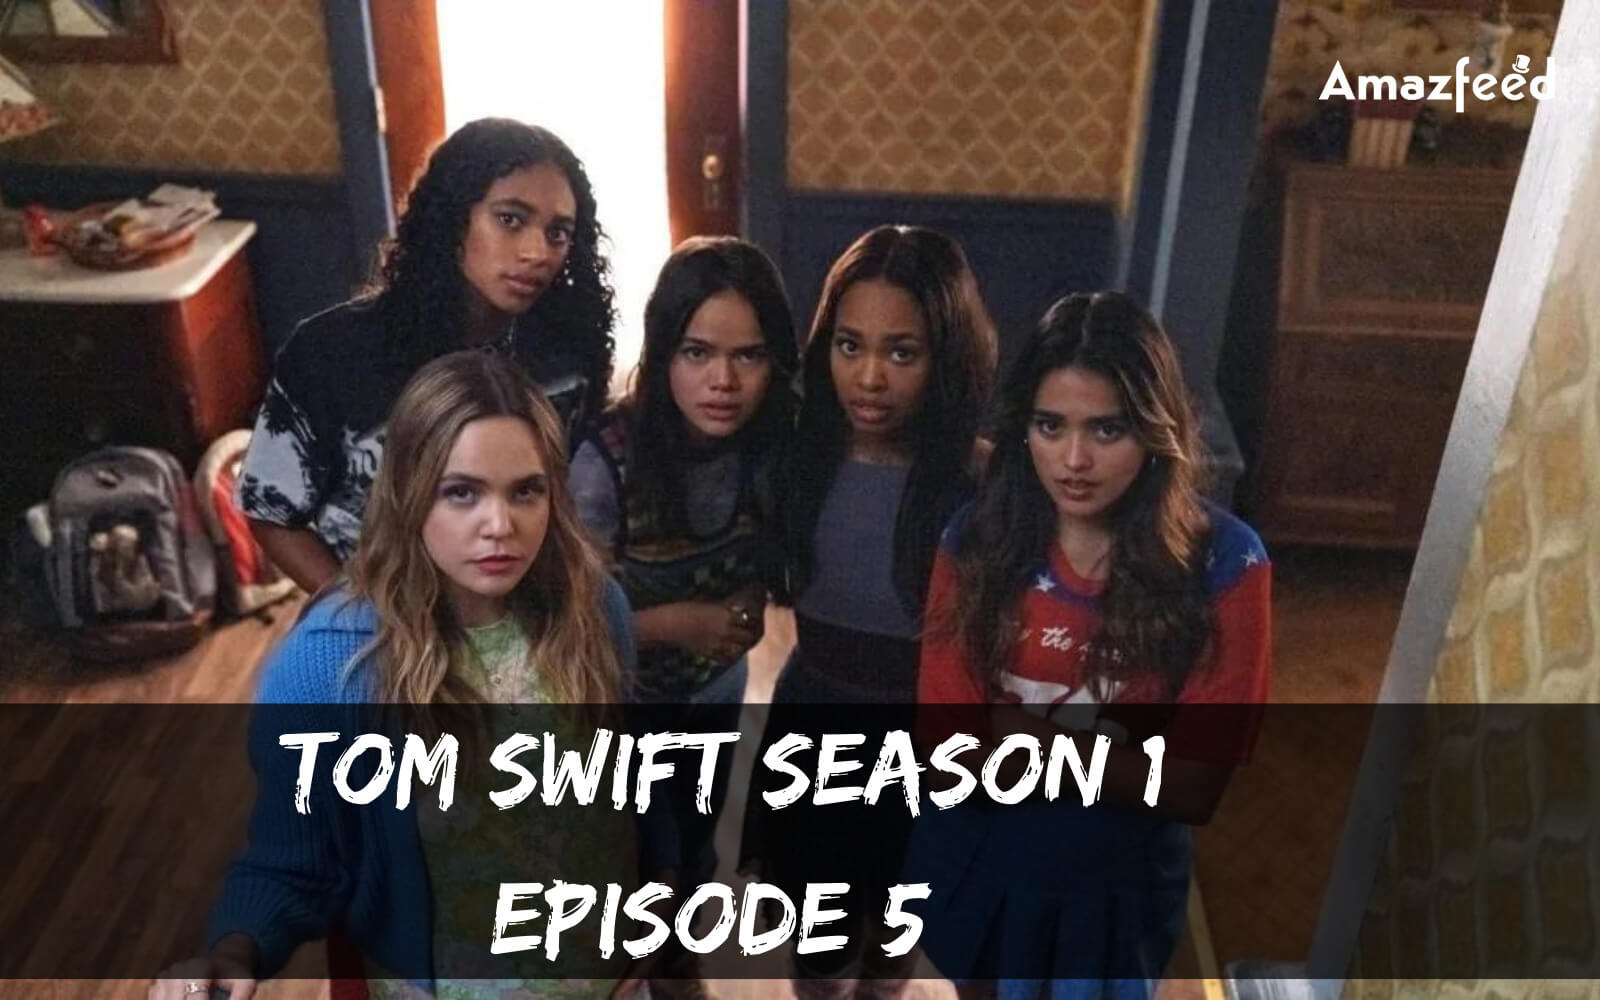 Tom Swift Season 1 Episode 5 release date